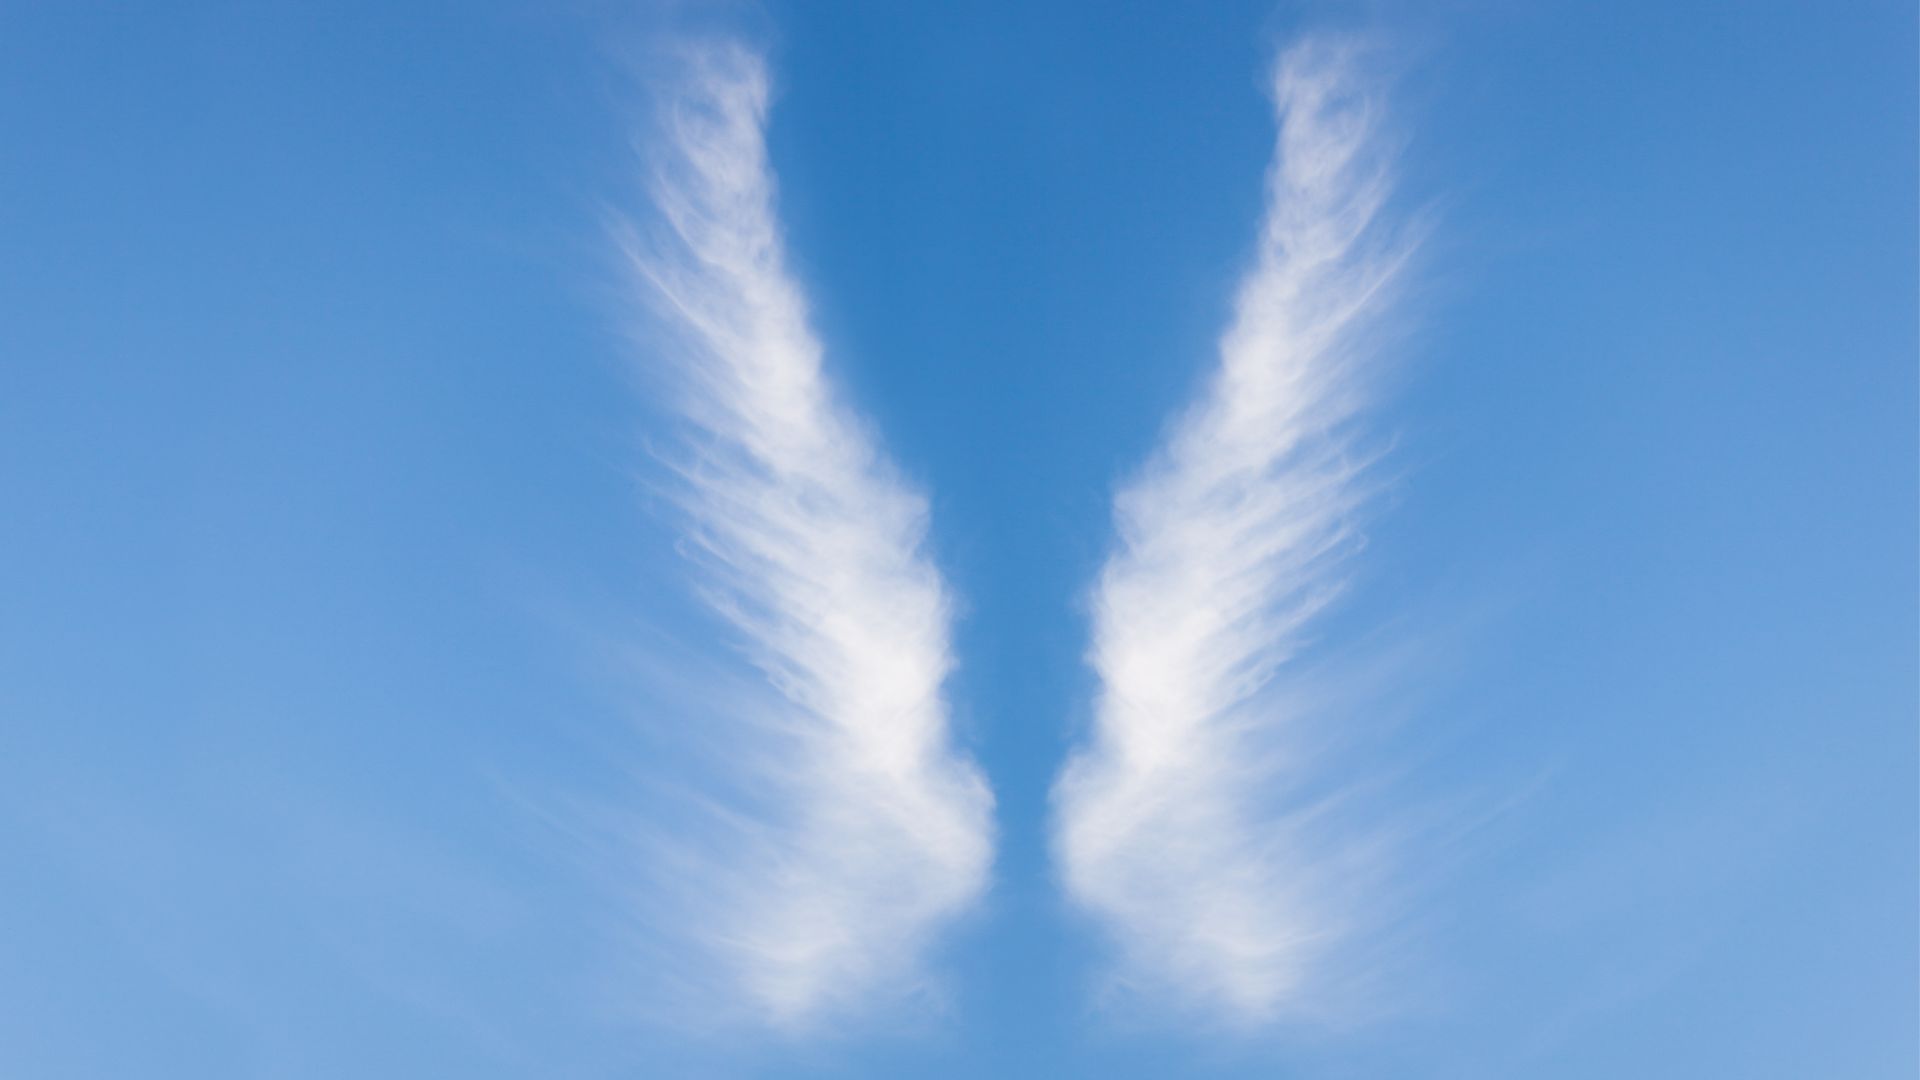 Les nuages cirrus prennent des formes extraordinaires et il est parfois difficile de savoir si le cliché a été retouché par un logiciel. © Canva